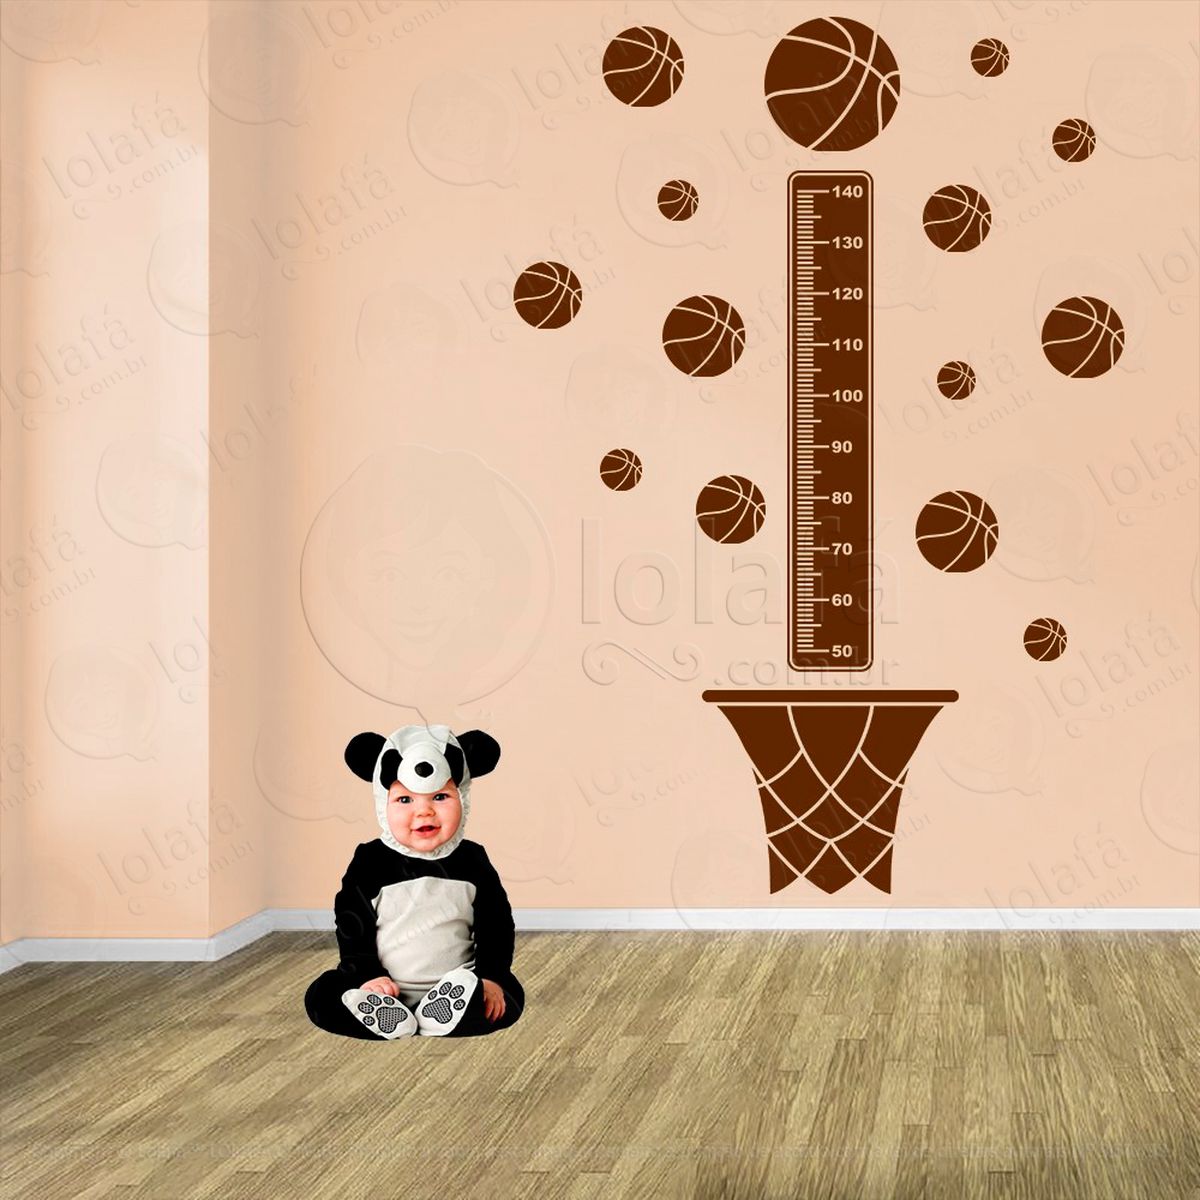 basquetebol e bolas de basquete adesivo régua de crescimento infantil, medidor de altura para quarto, porta e parede - mod:284